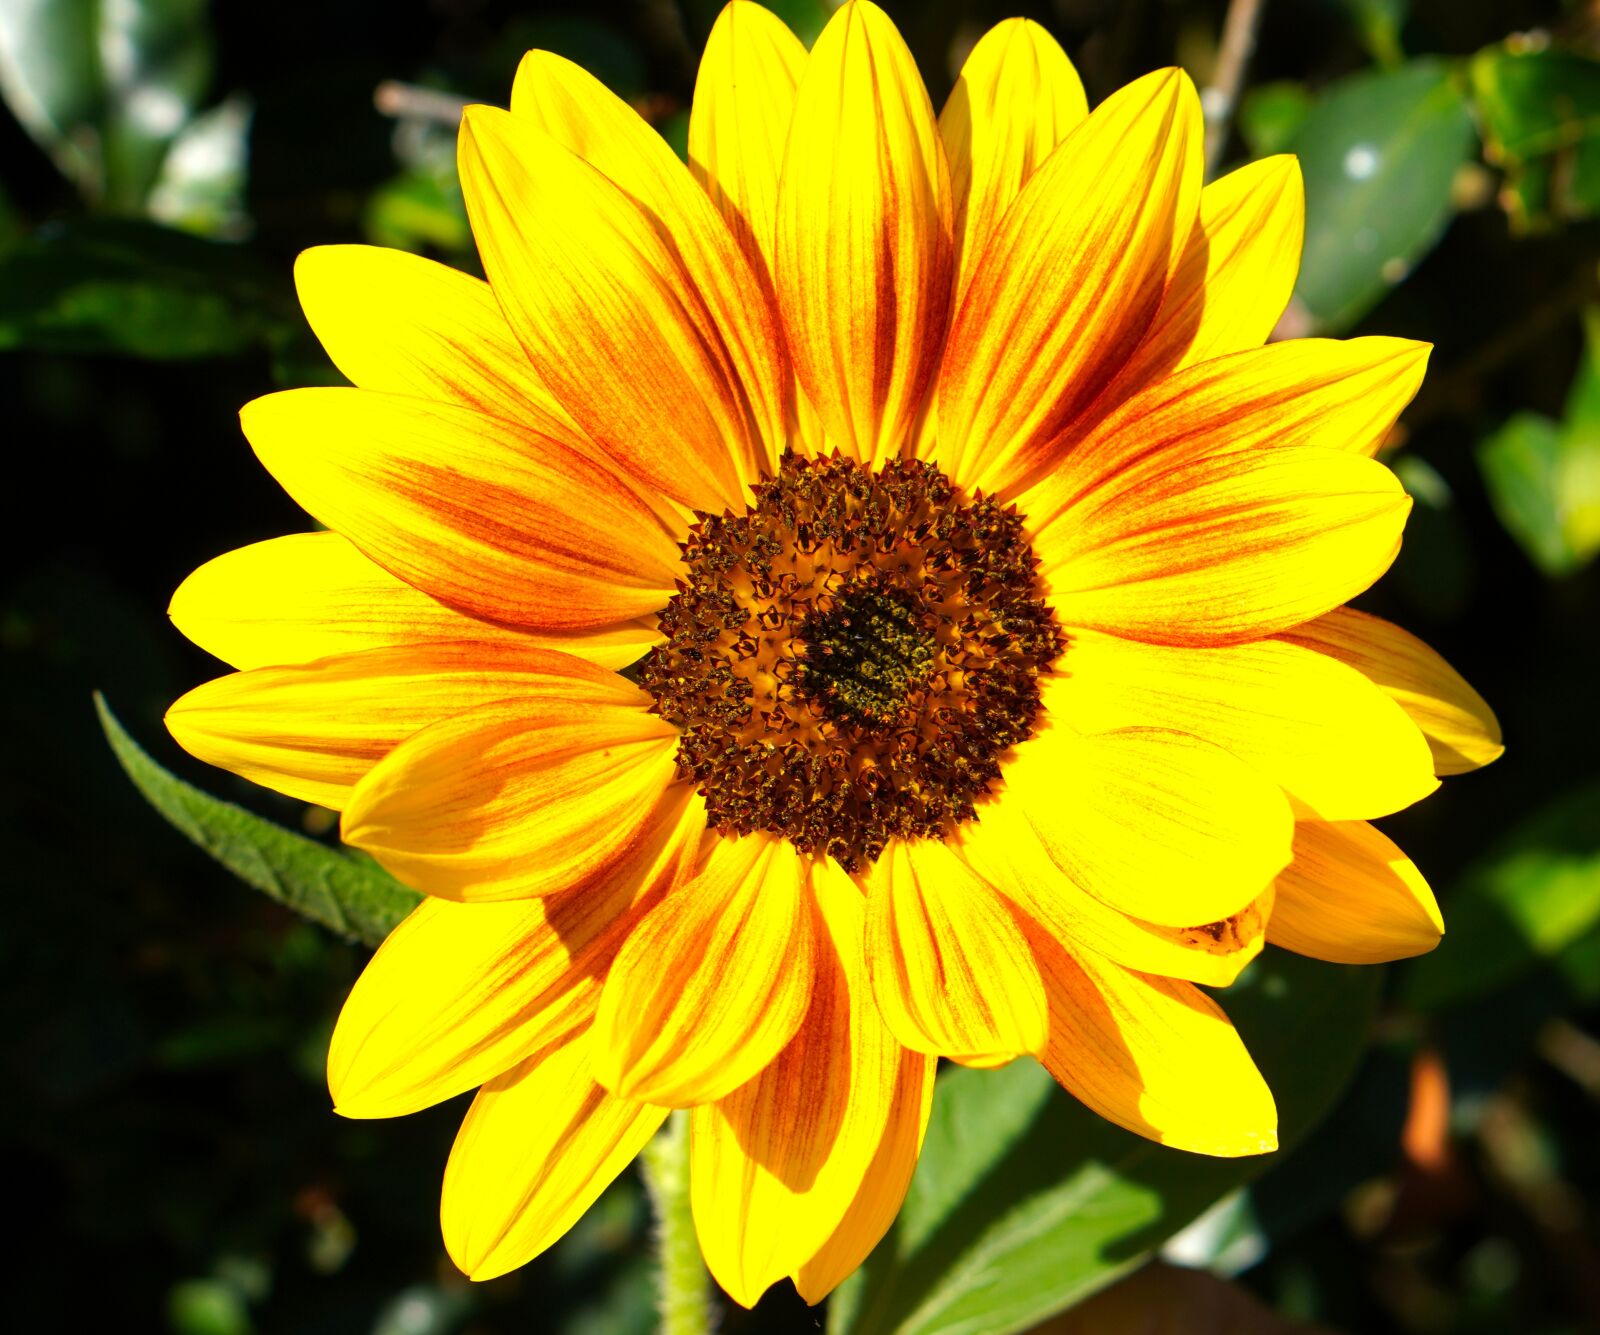 E 50mm F1.8 OSS sample photo. Flower, sunflower, blossom photography